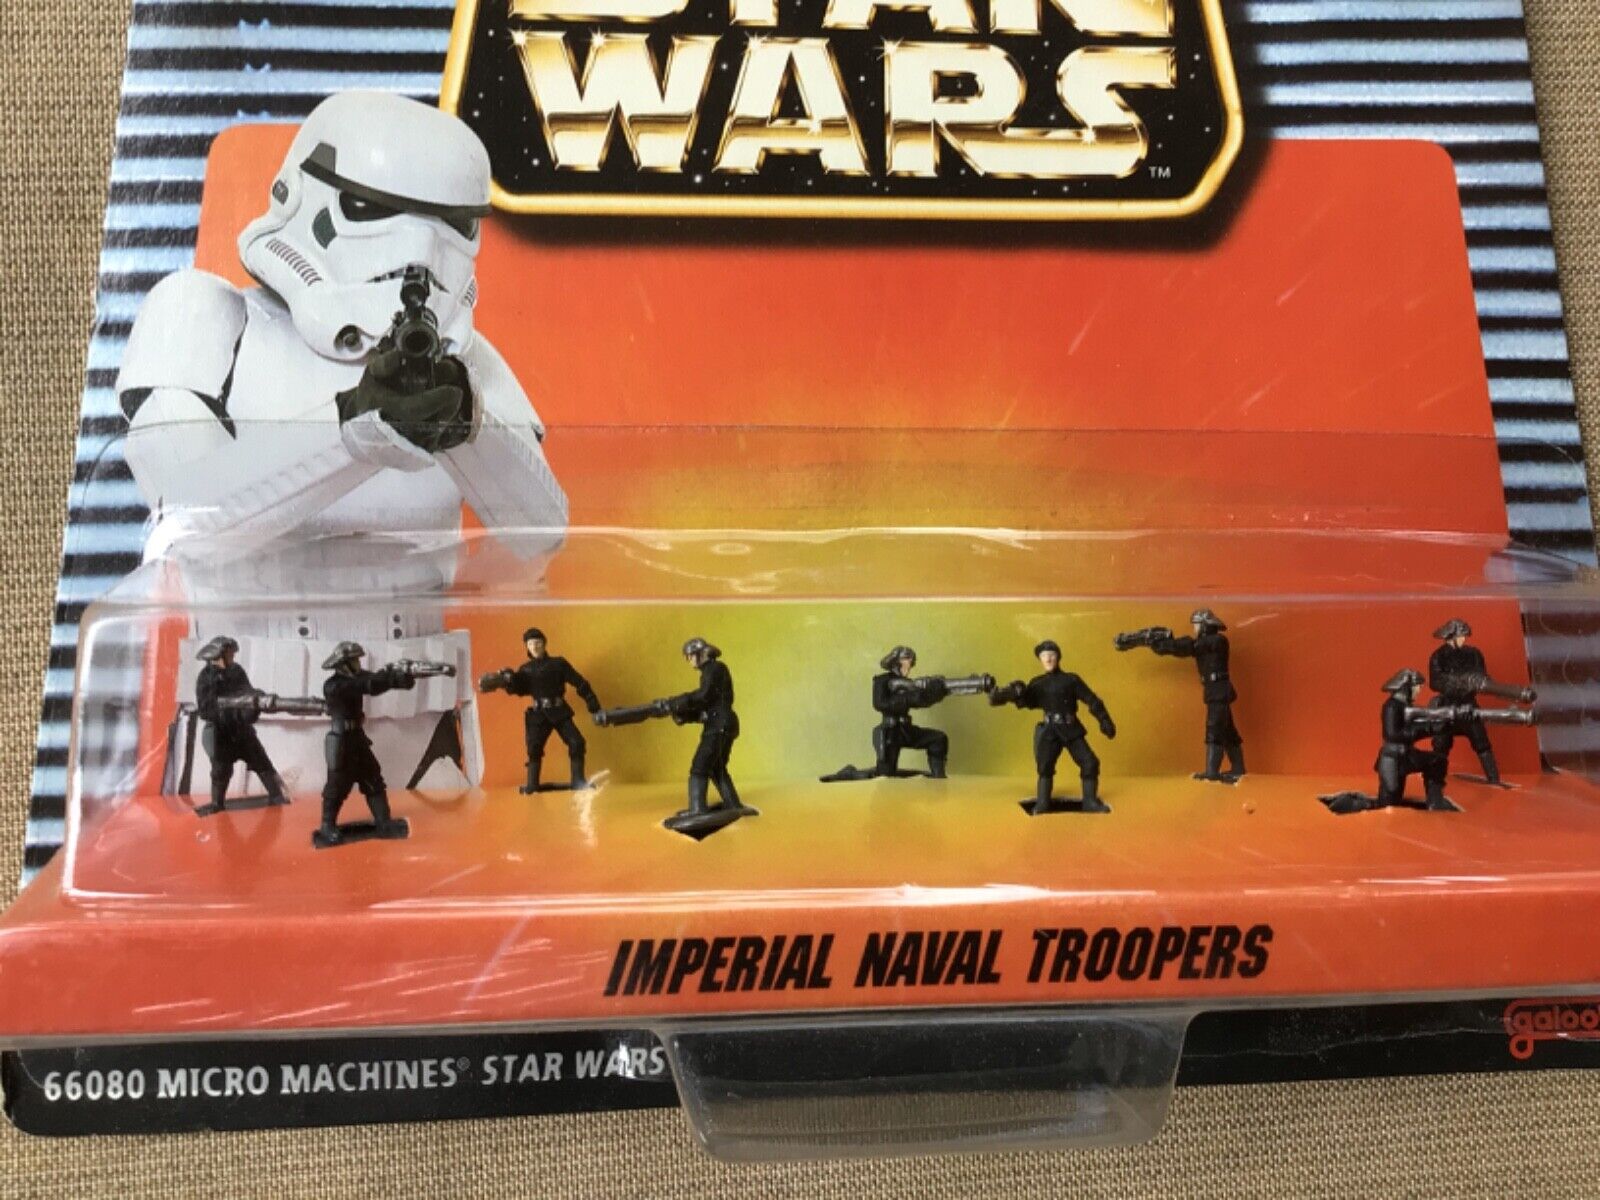 Micro Machines Star Wars Imperial Naval Troopers Vintage 1996 Galoob NEW IN BOX